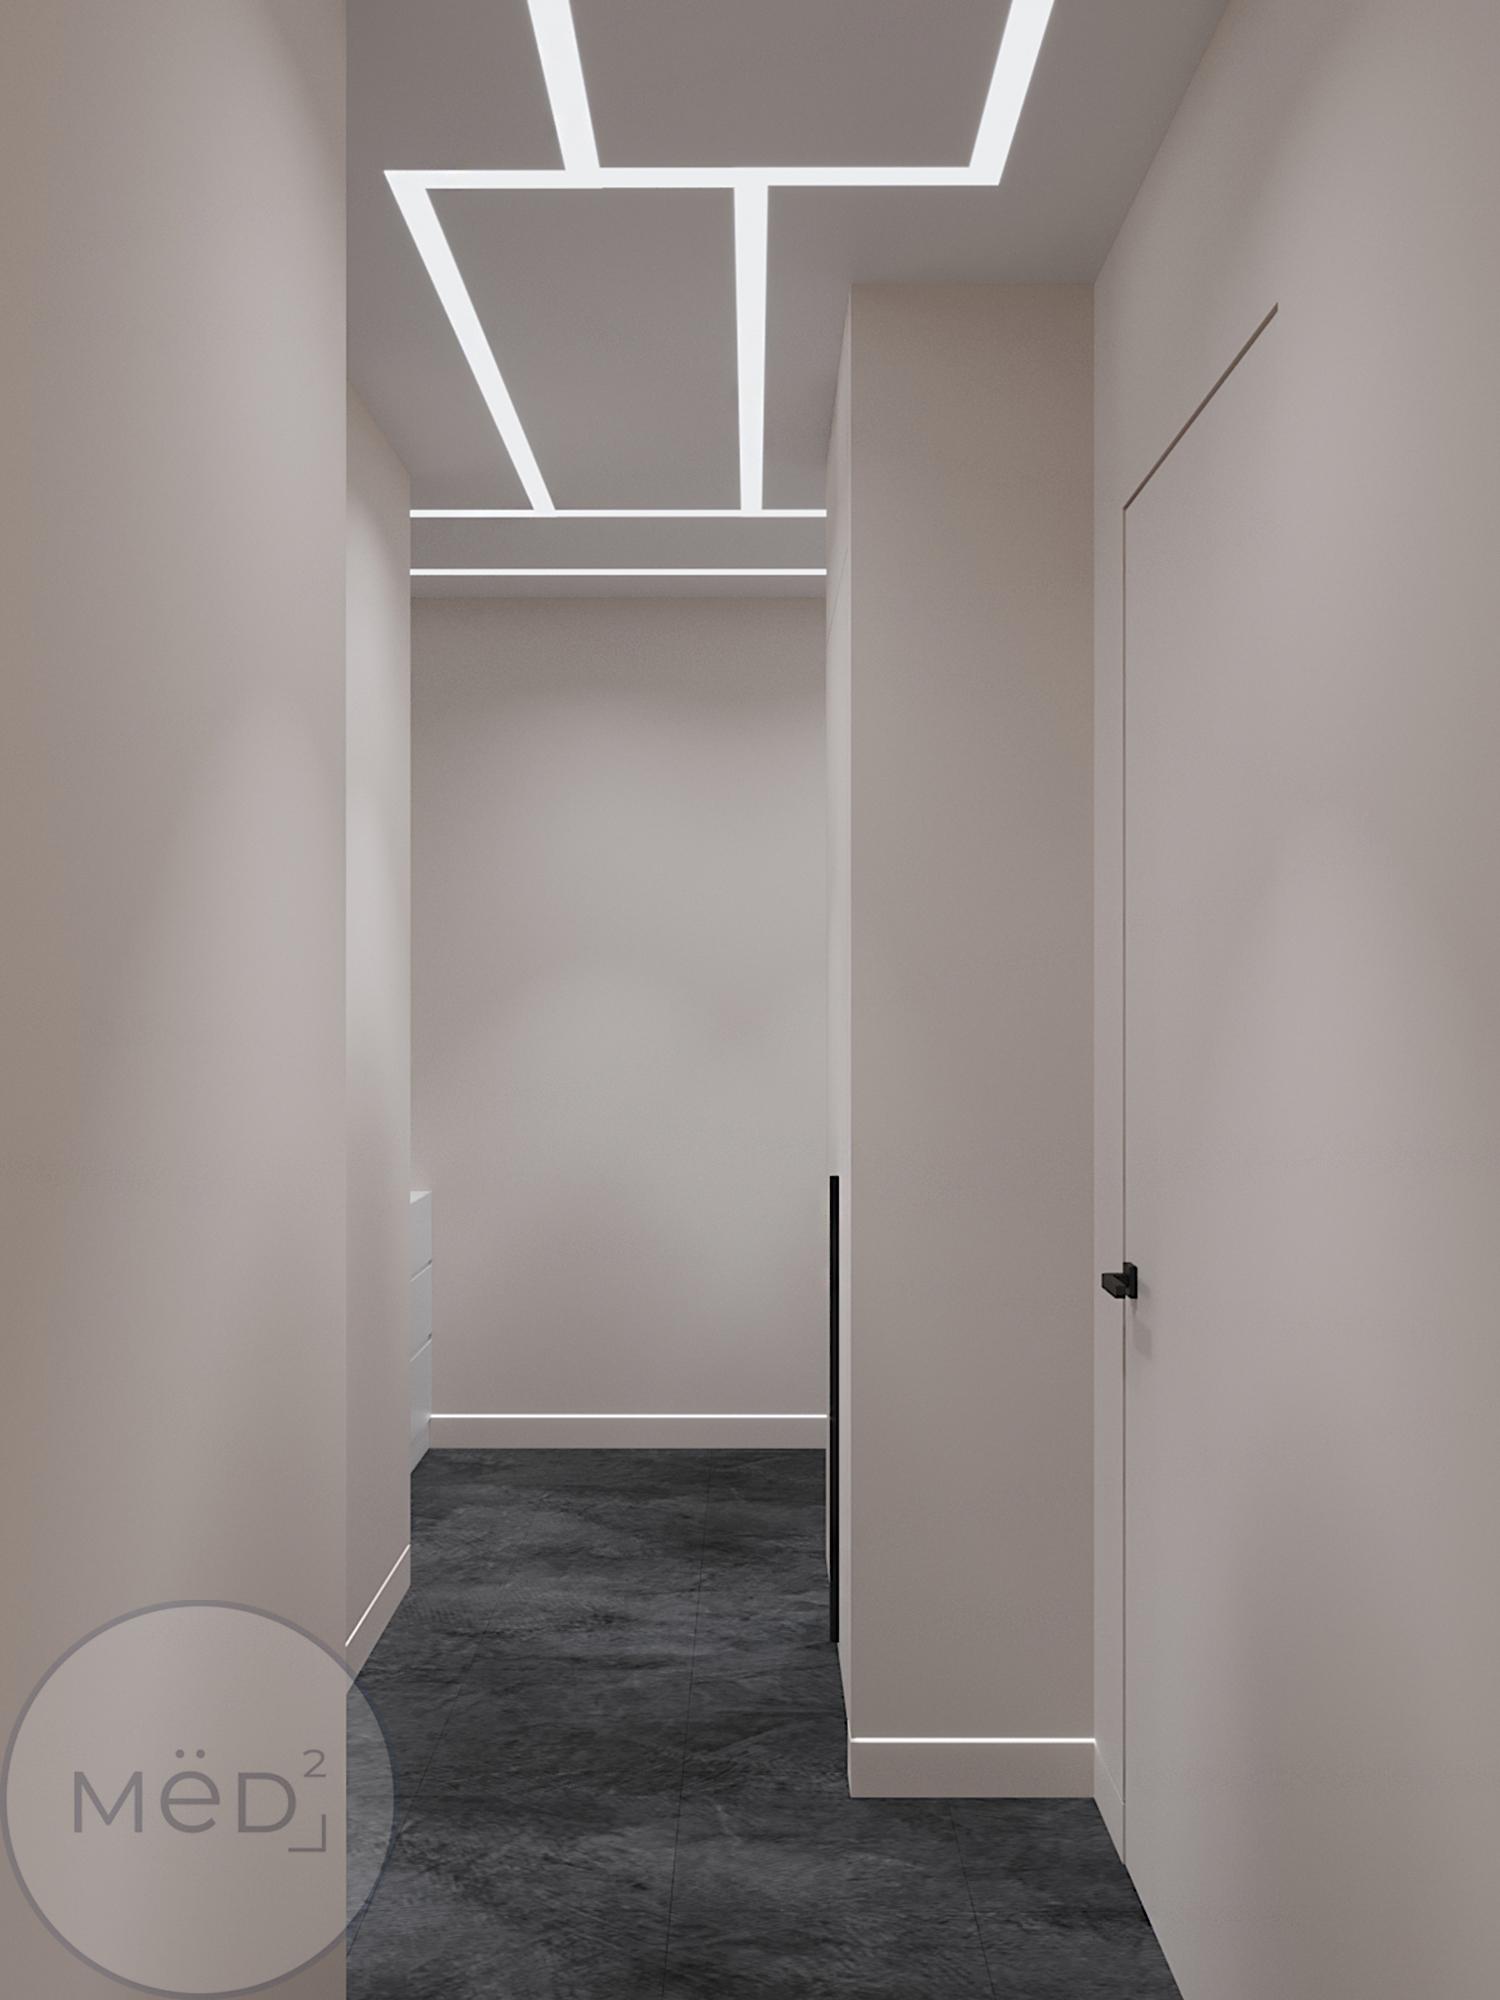 Интерьер коридора с нишей с подсветкой, световыми линиями, рейками с подсветкой, подсветкой настенной, подсветкой светодиодной и с подсветкой